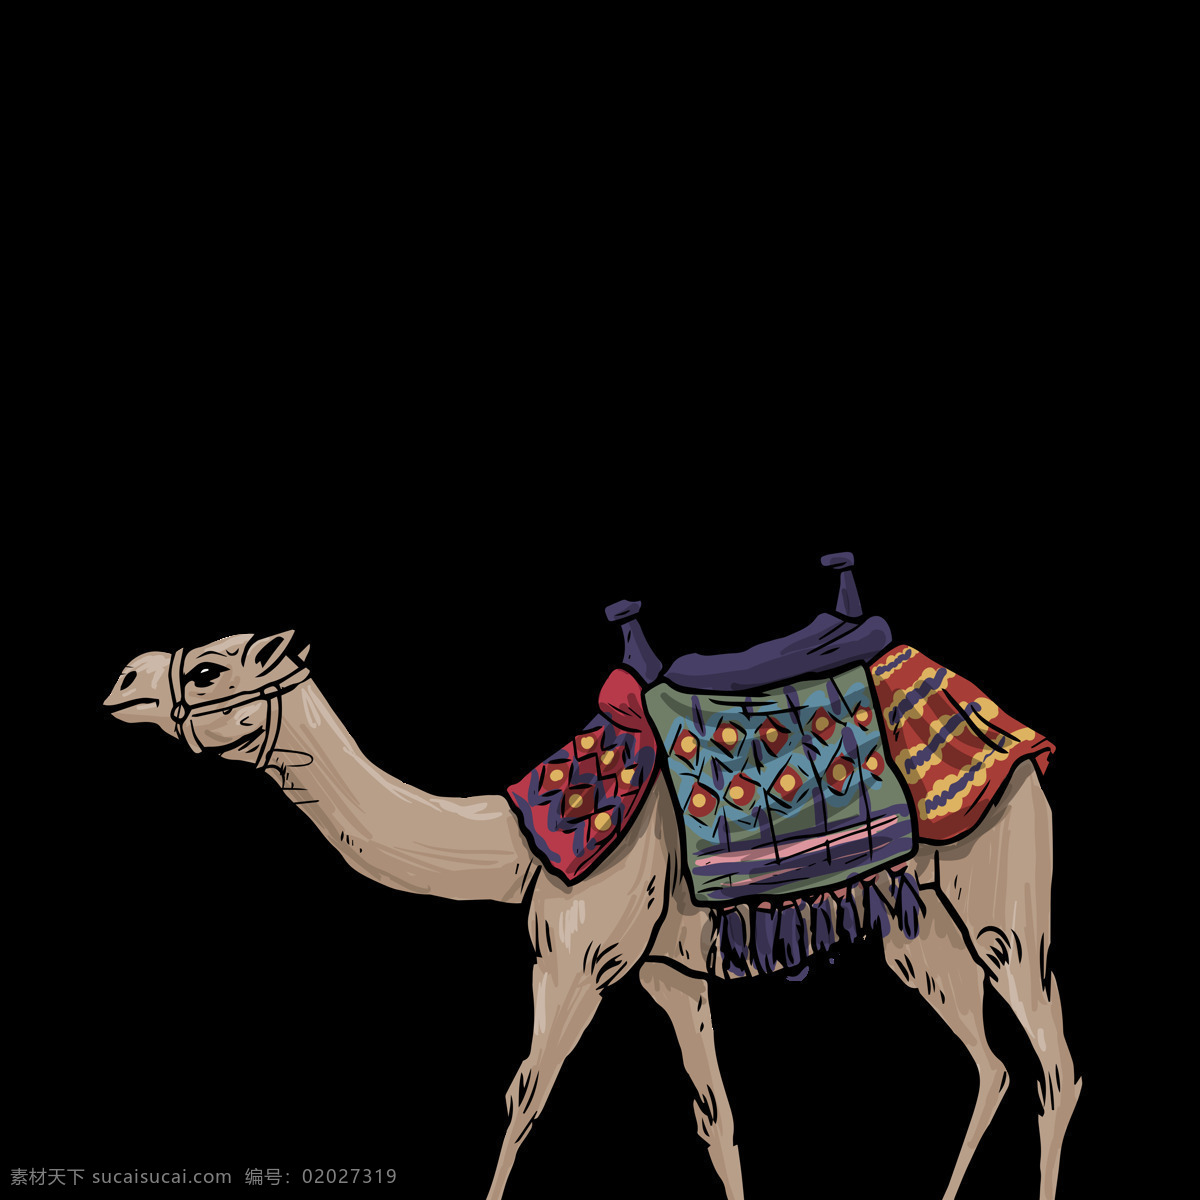 透明底骆驼 骆驼图片 卡通骆驼 png图